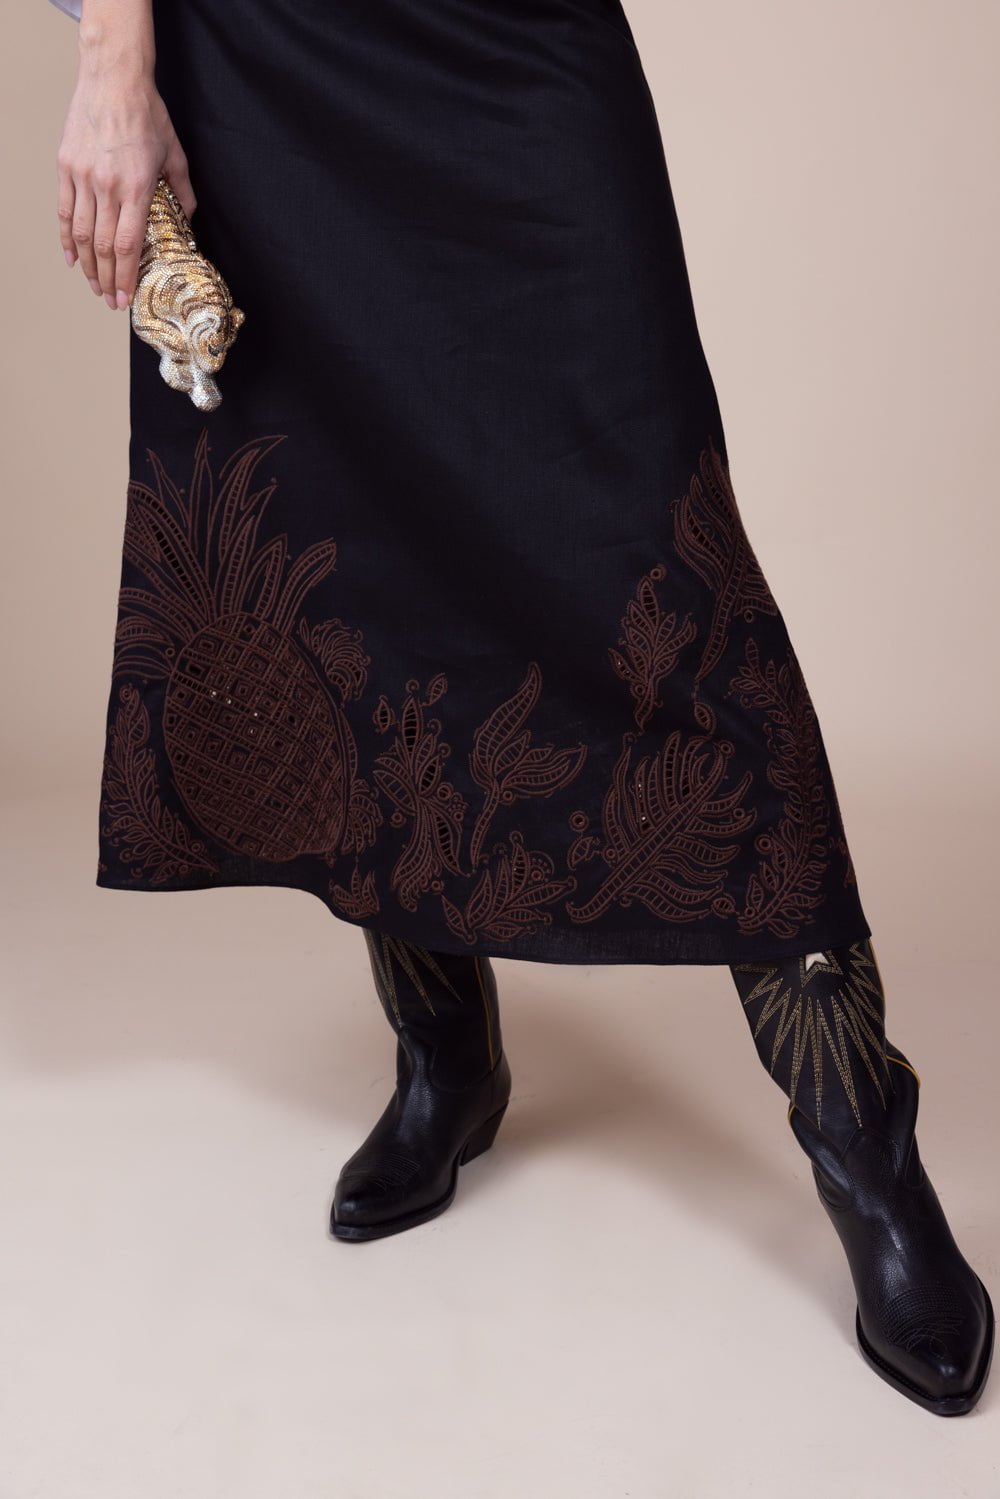 DOROTHEE SCHUMACHER-Exquisite Luxury Skirt-